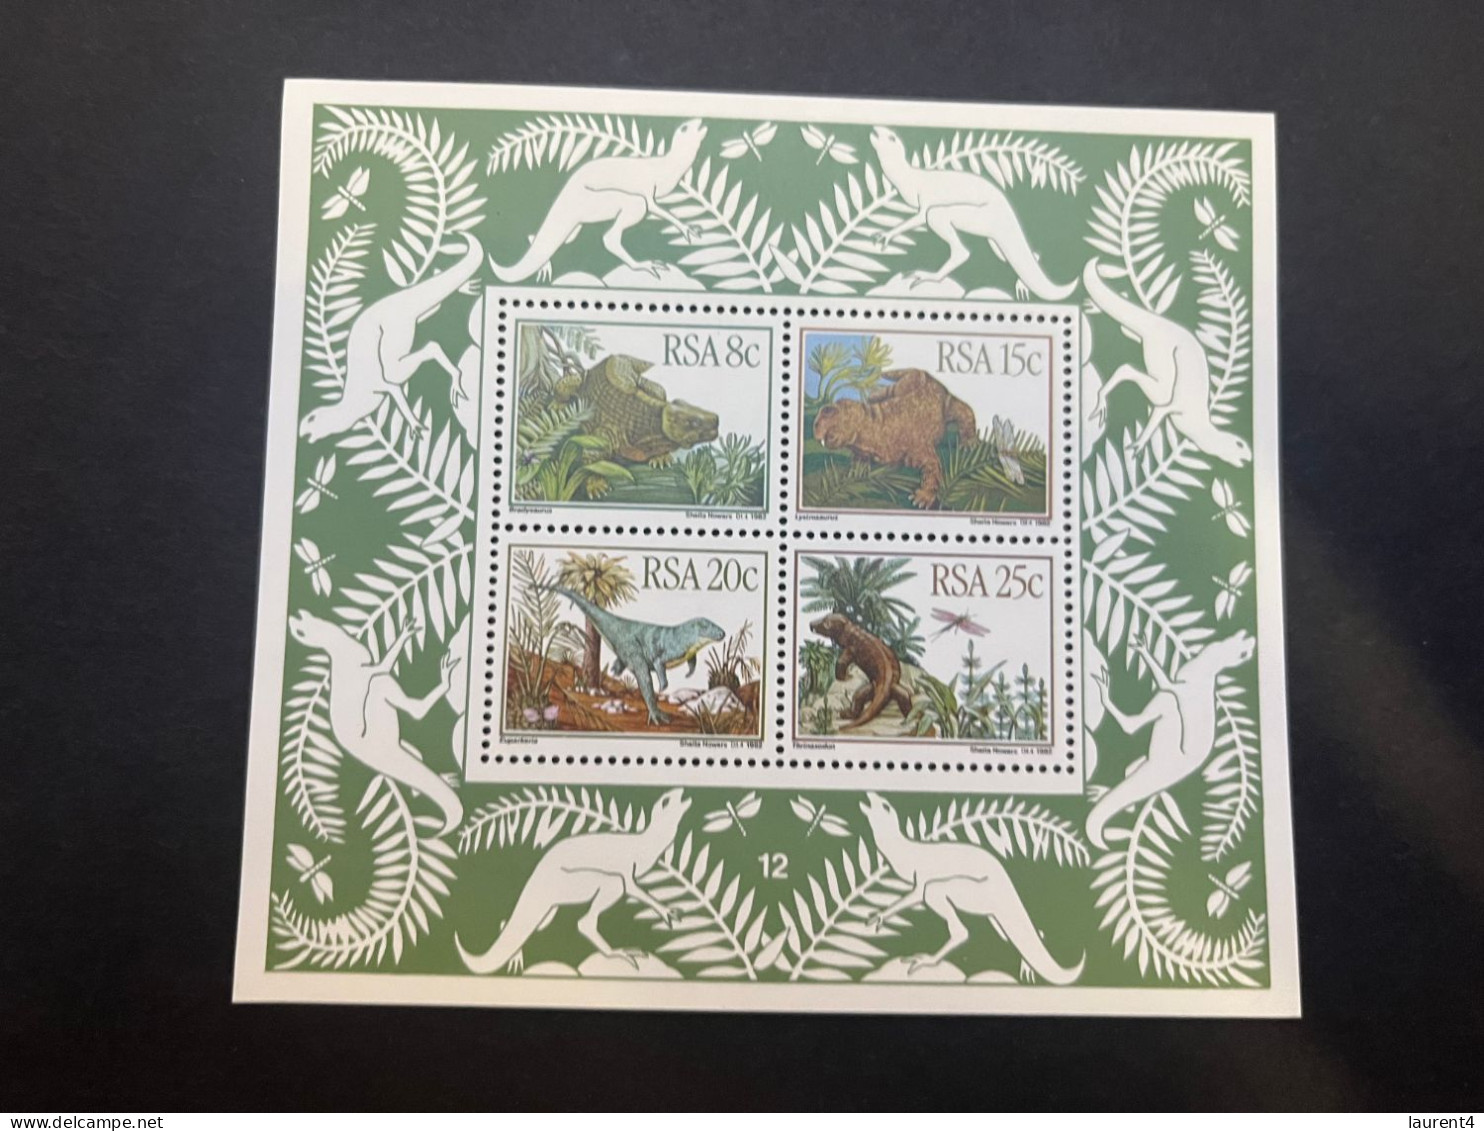 13-5-2024 (stamp) Mint (neuve) Mini-sheet - RSA South Africa - Dinosaurs - Préhistoriques